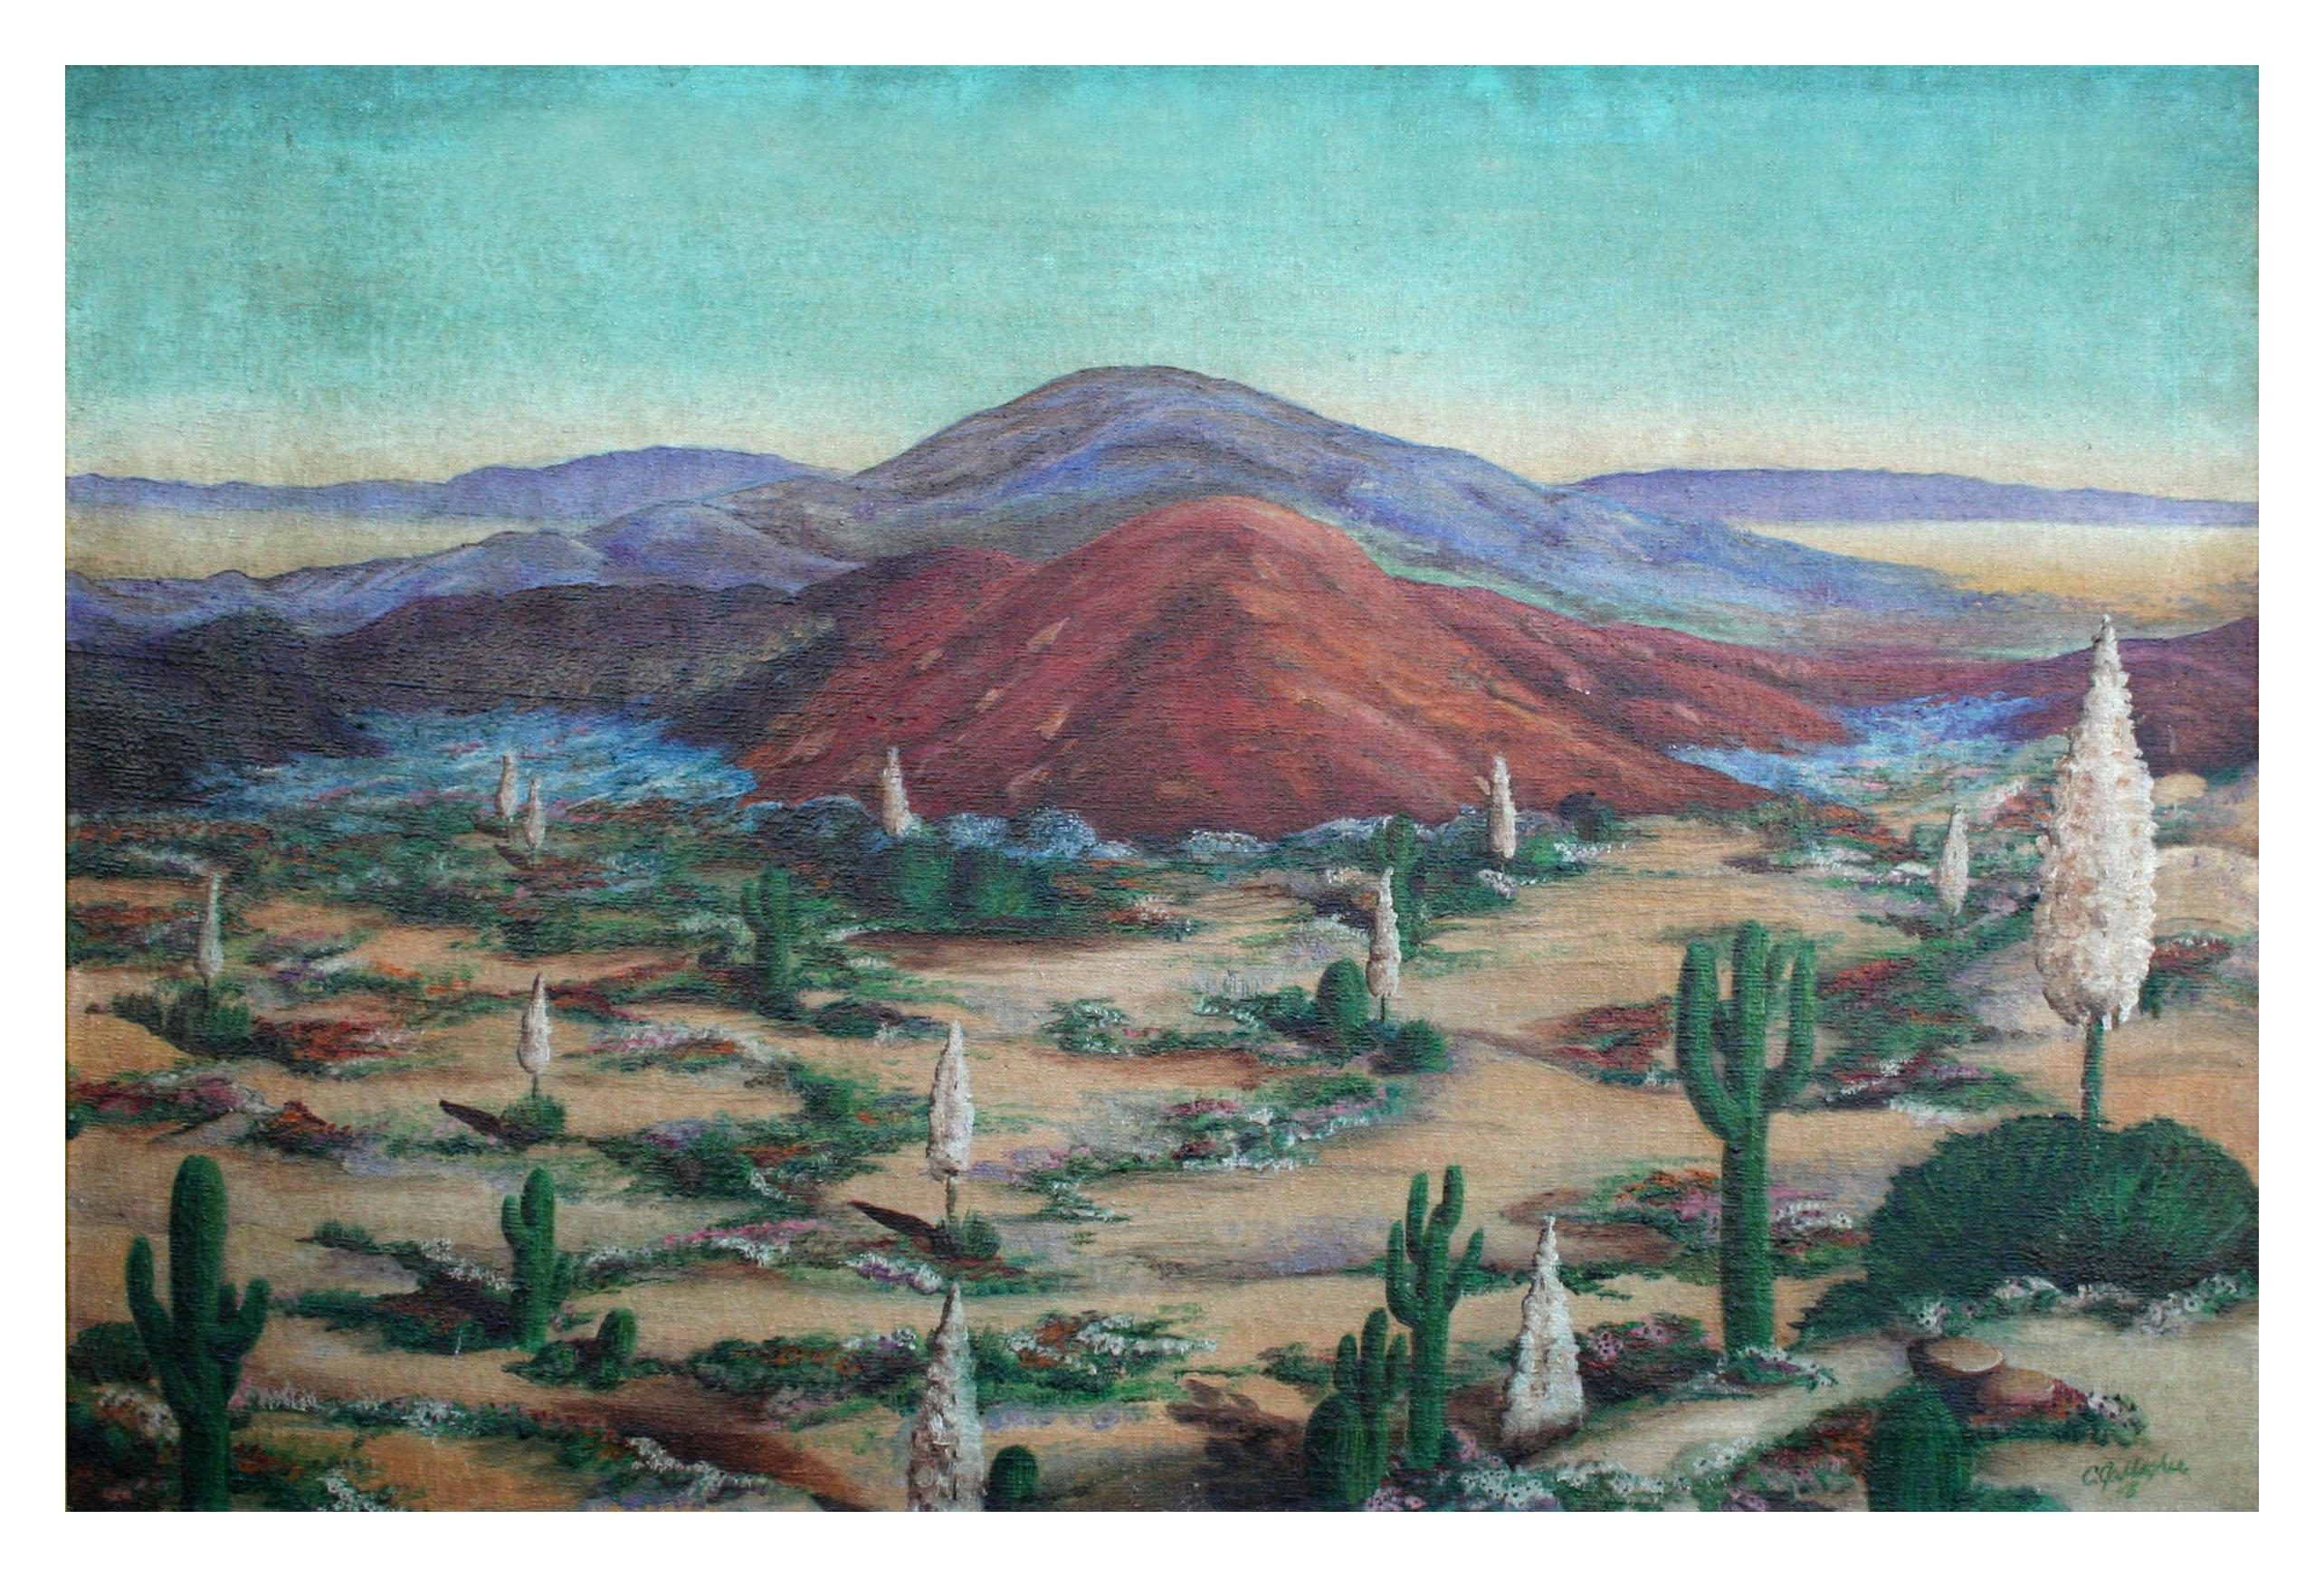 Paysage du désert du Sud-Ouest du milieu du siècle dernier, huile sur toile - Painting de C. Gallagher